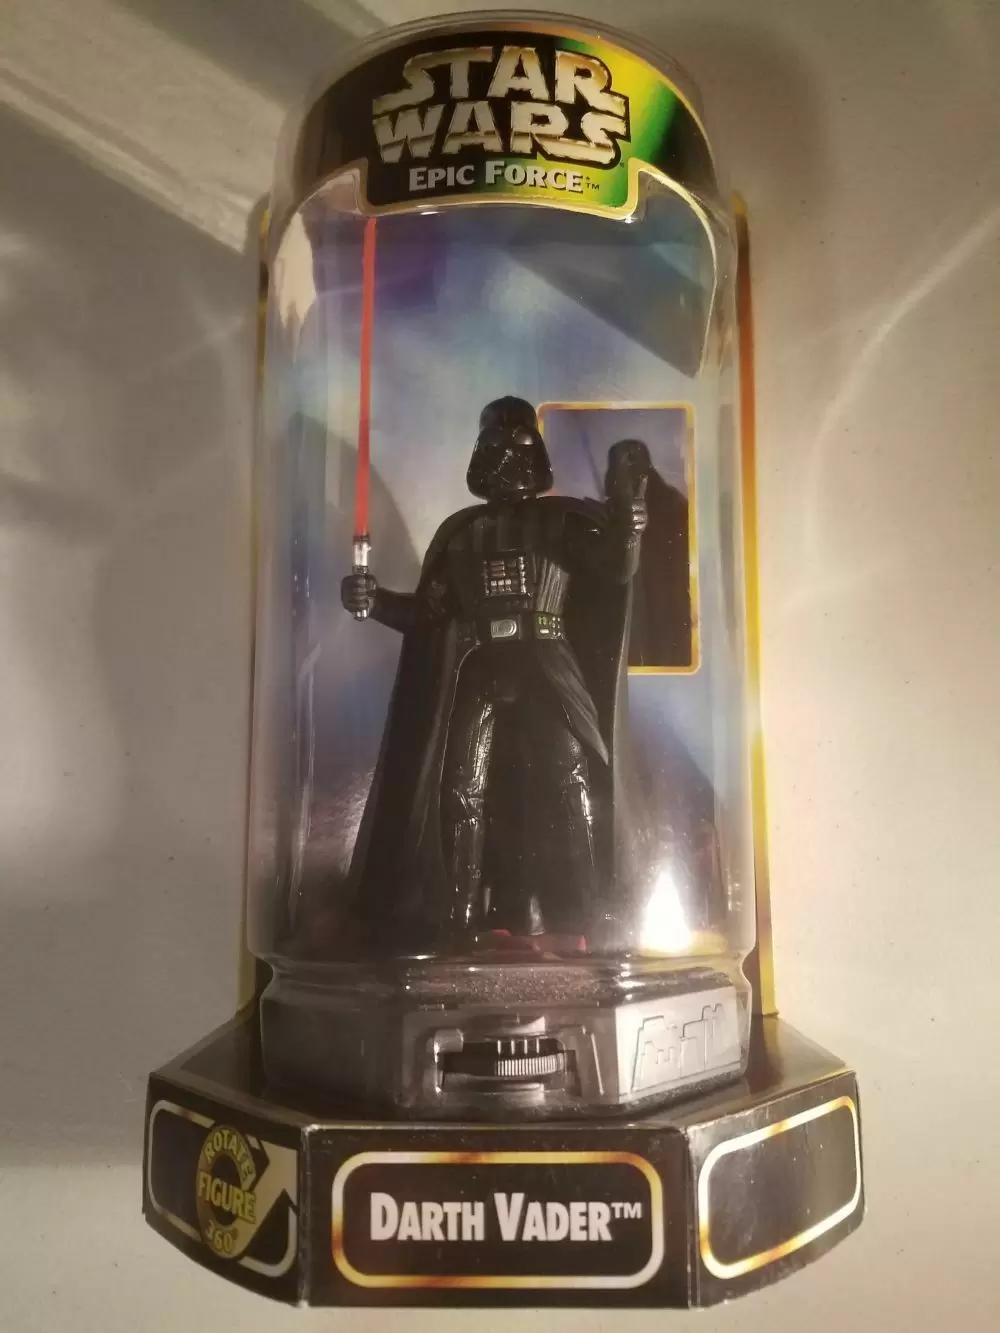 Epic Force - Darth Vader